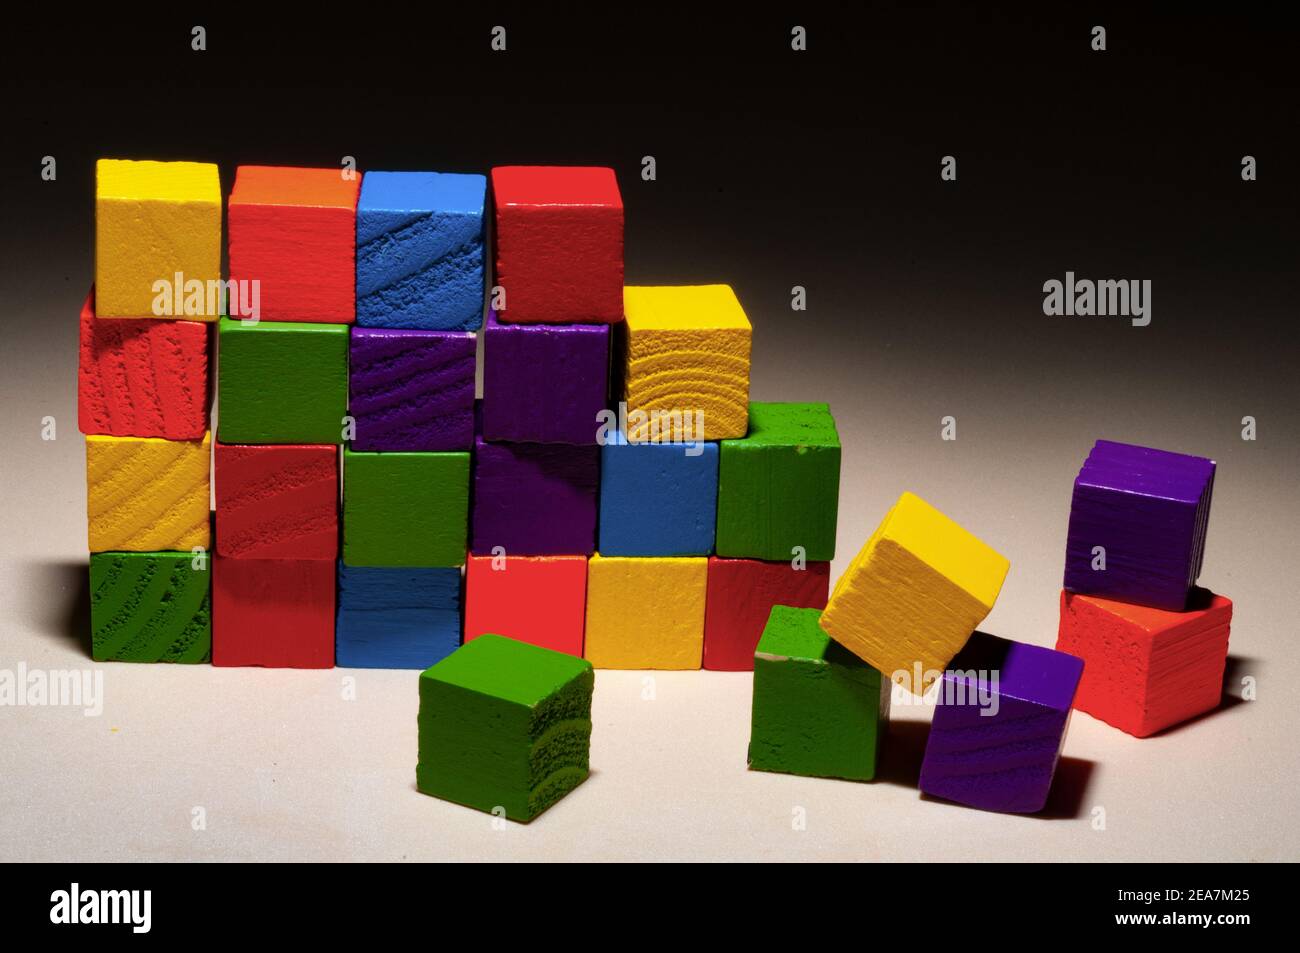 Mur de bâtiment avec cubes en bois colorés Banque D'Images